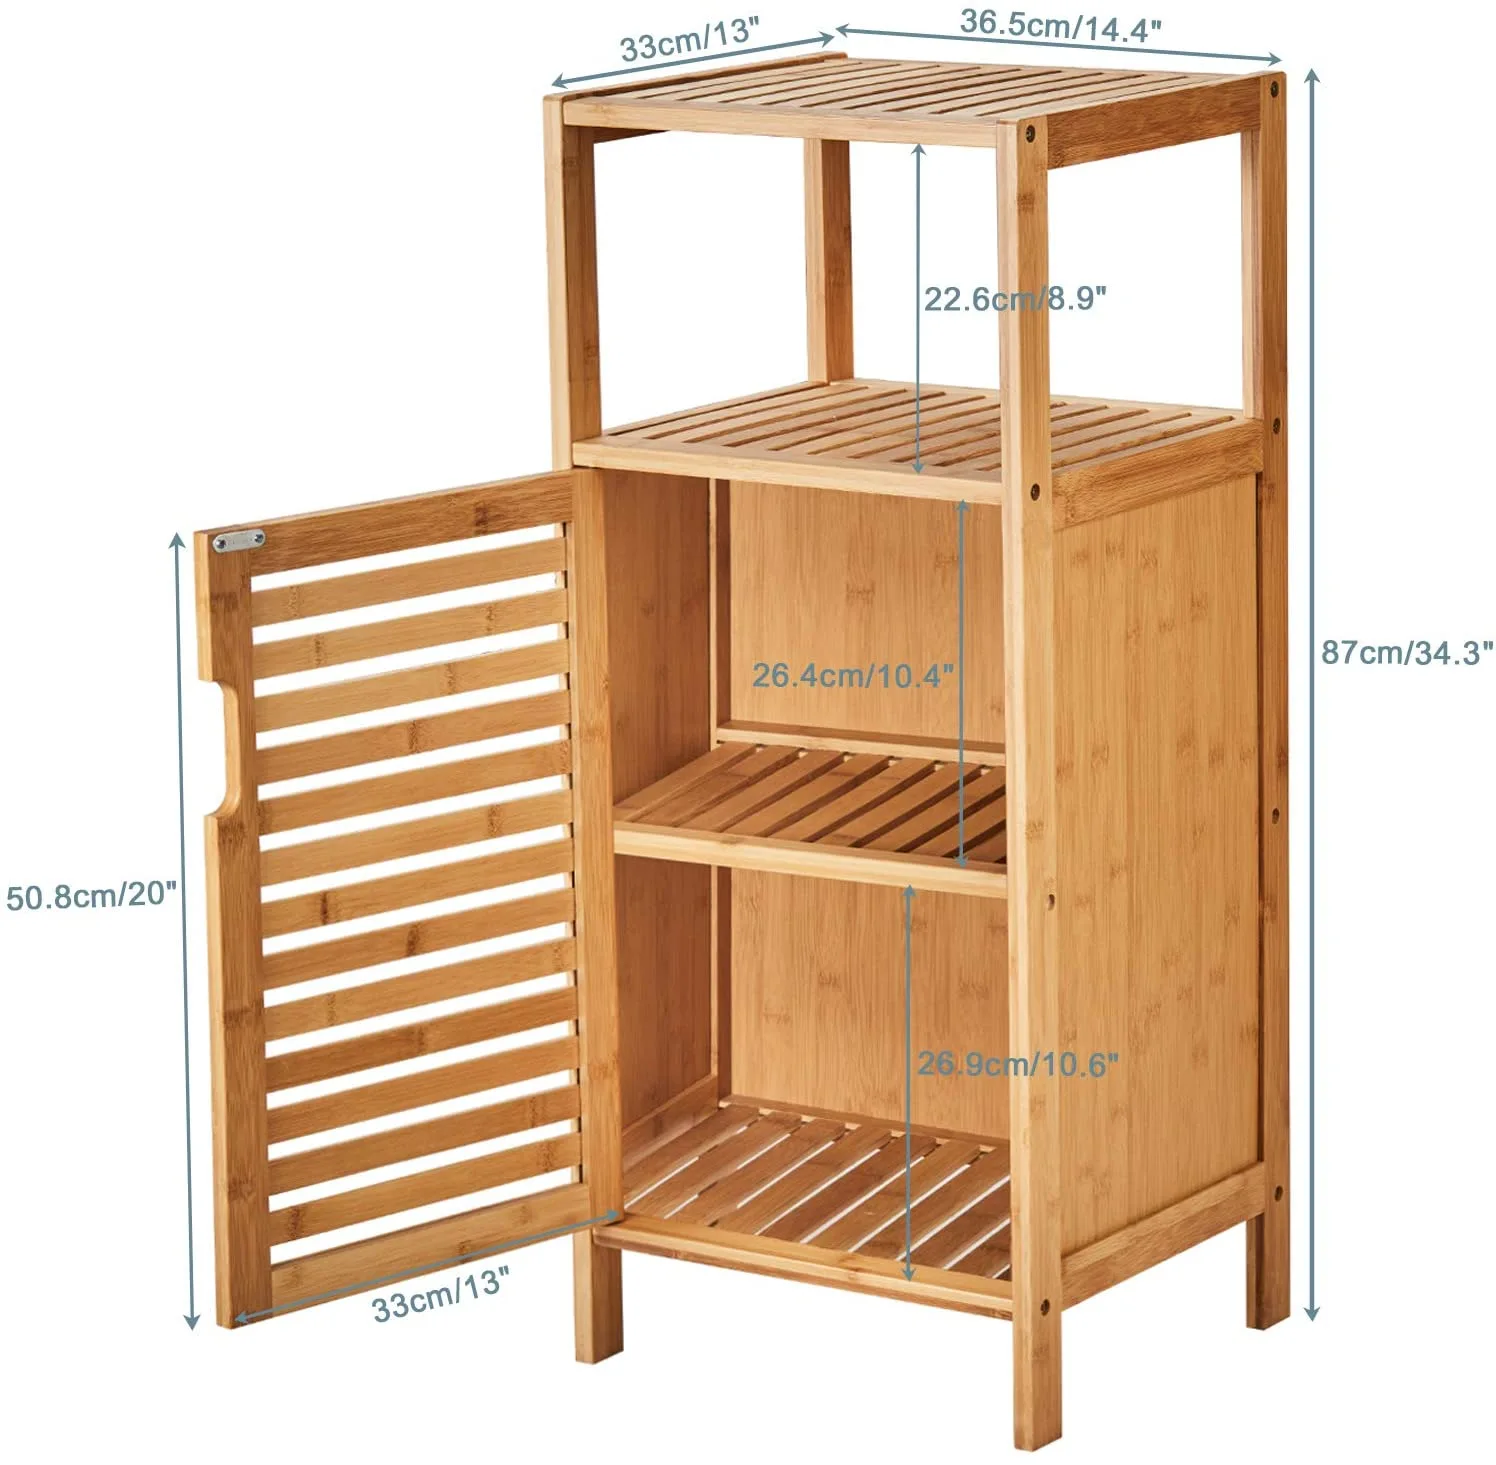 Waterproof 3 tier Bamboo Bedside storage cabinet shelf with door